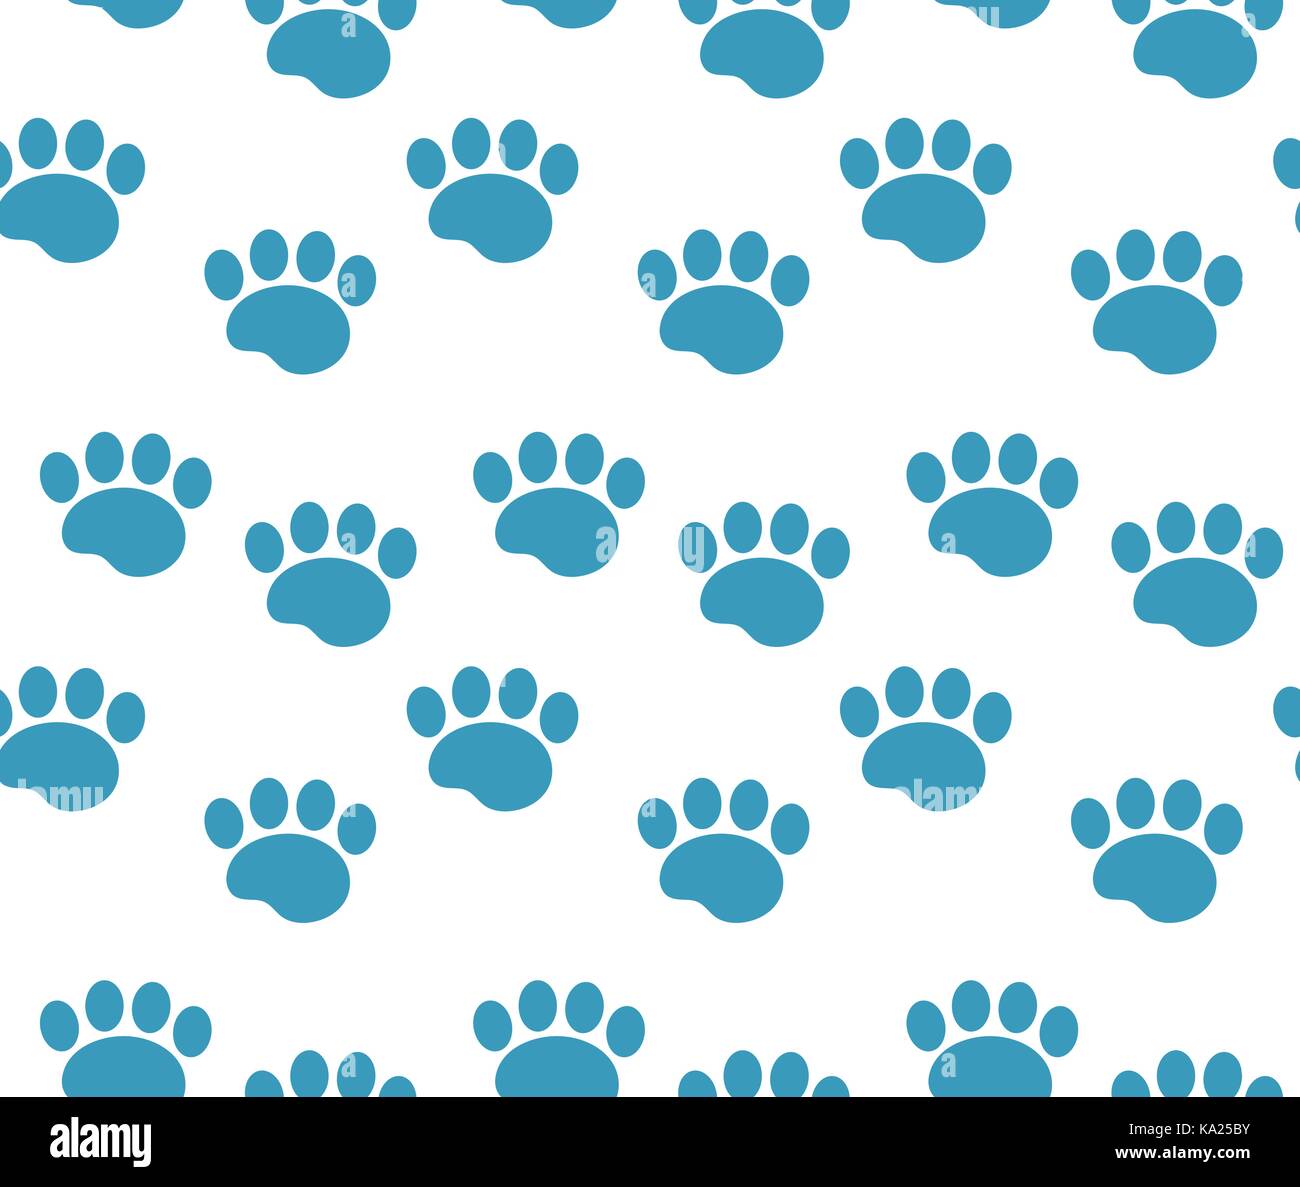 Des pistes d'animaux. motif pattes de chien sans traces de répéter sans fin, texture background. vector illustration. Illustration de Vecteur